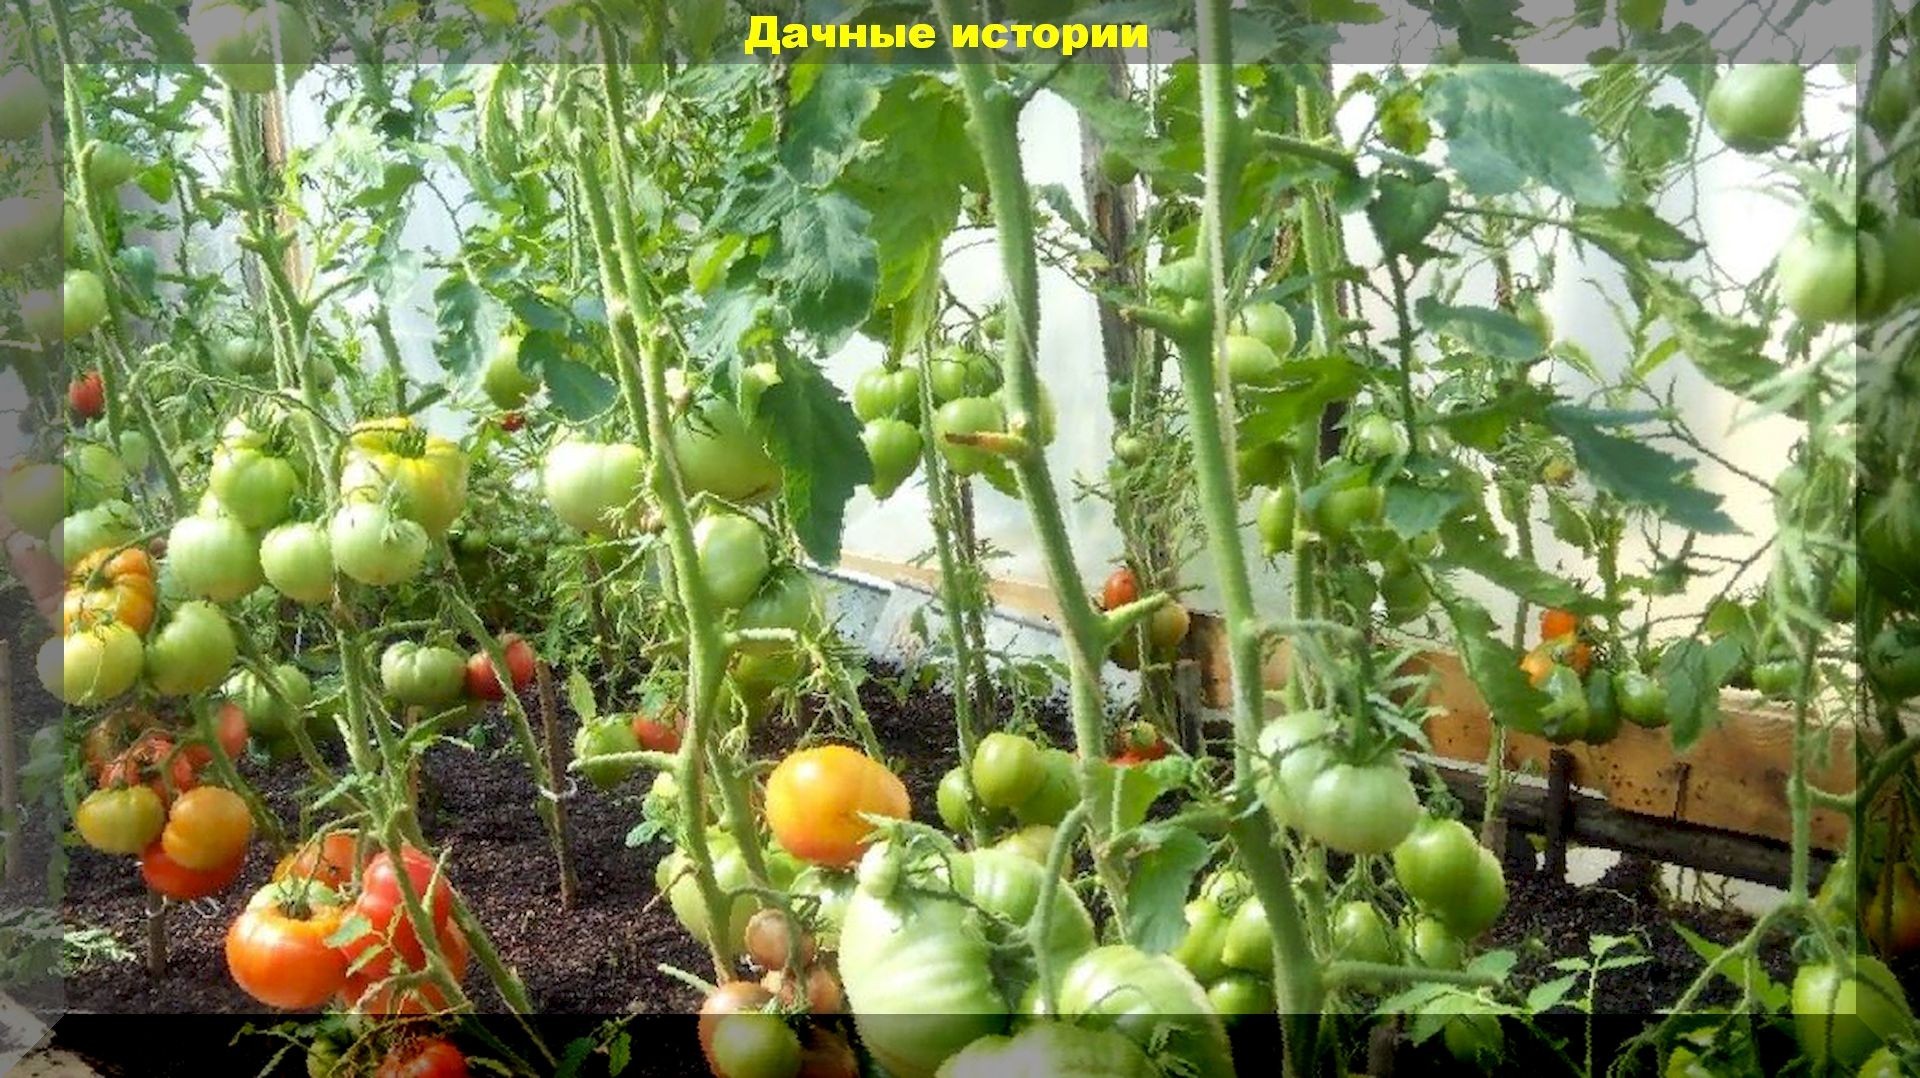 Помидорные советы и хитрости проверенные годами: секреты небывалого урожая томатов